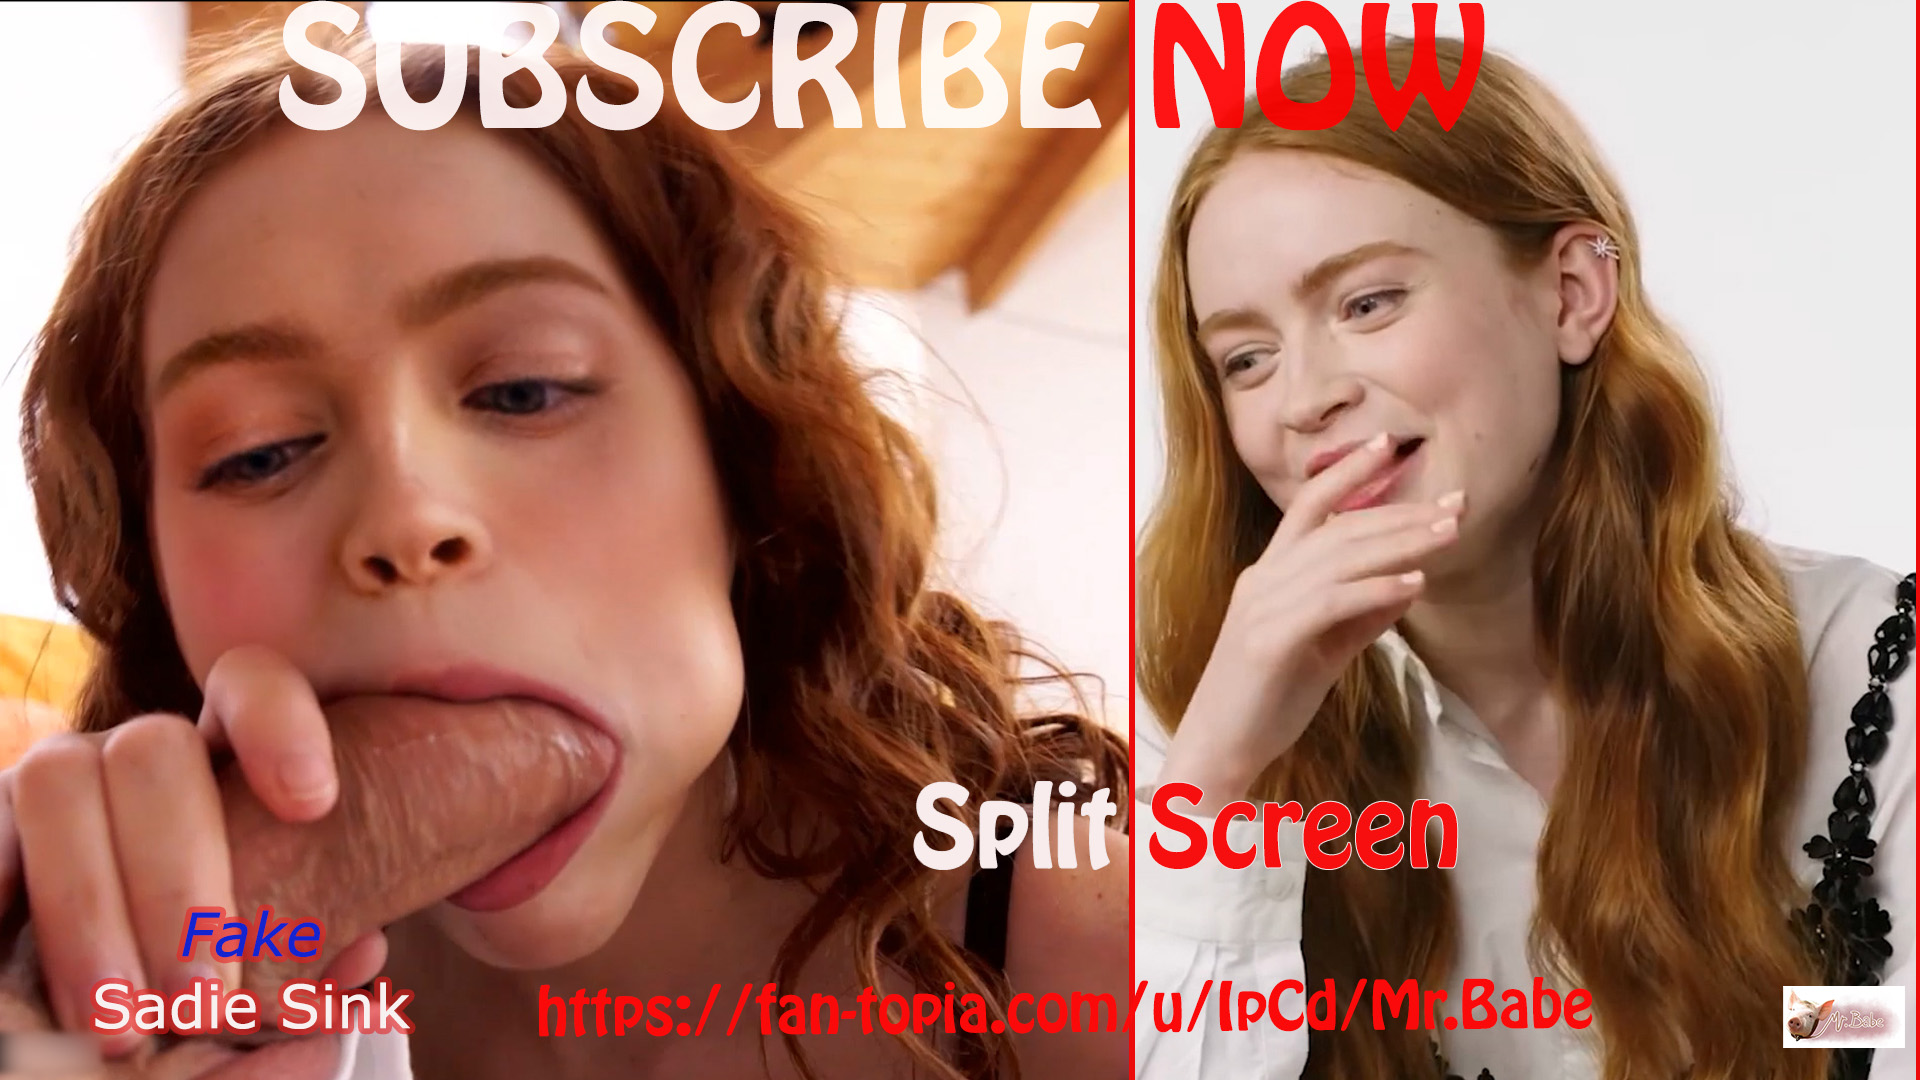 Fake Sadie Sink (trailer) -2- / Split Screen / Free Download